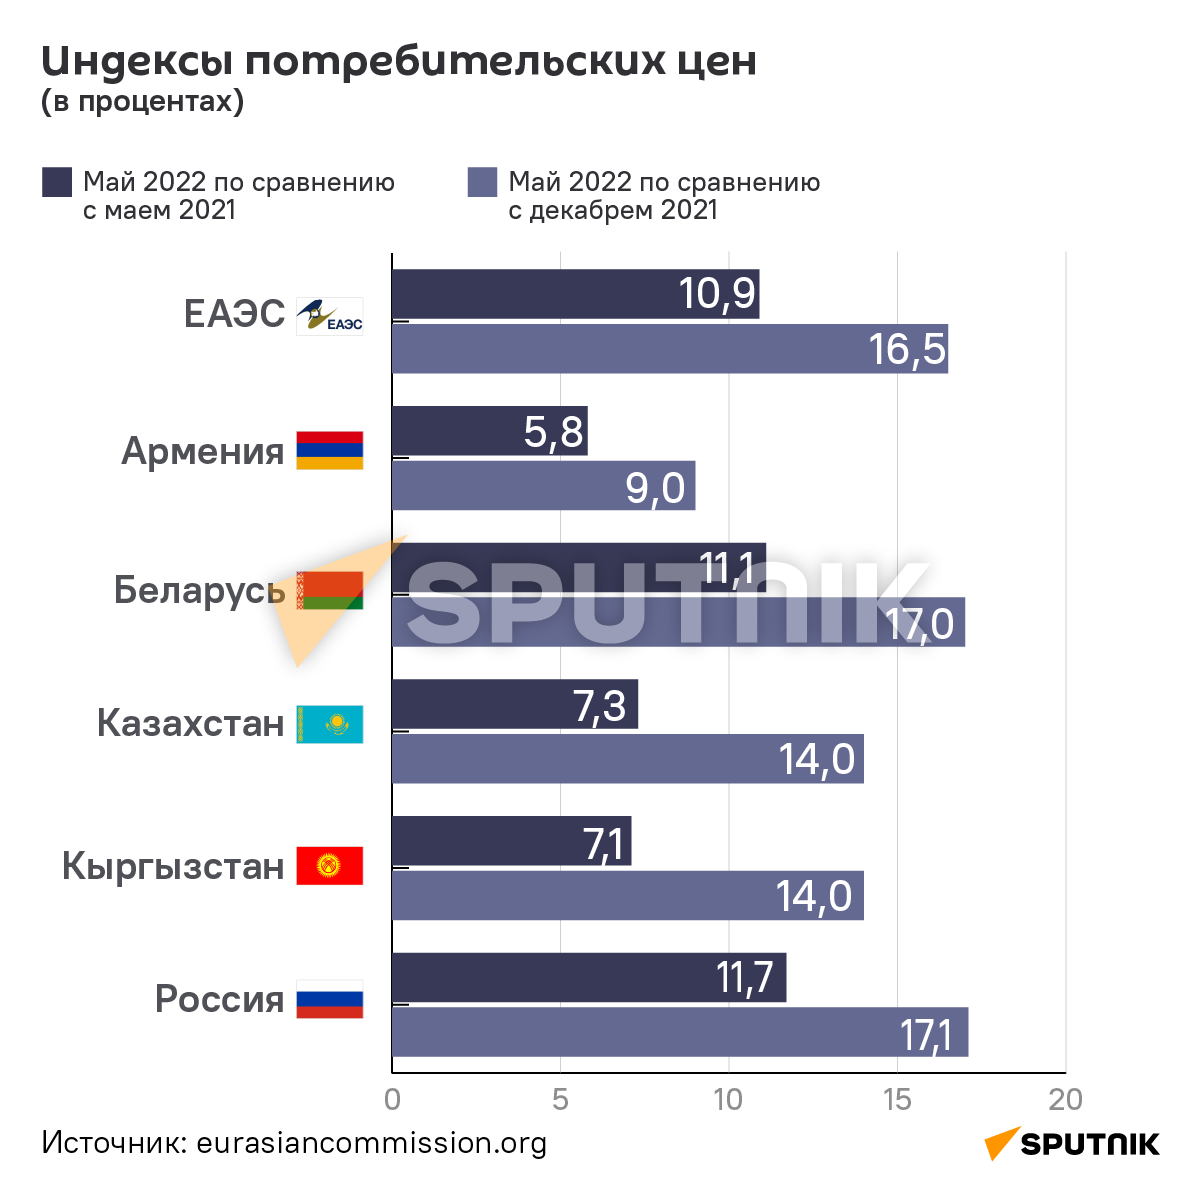 Индексы цен на потребительские товары и услуги в ЕАЭС - Sputnik Армения